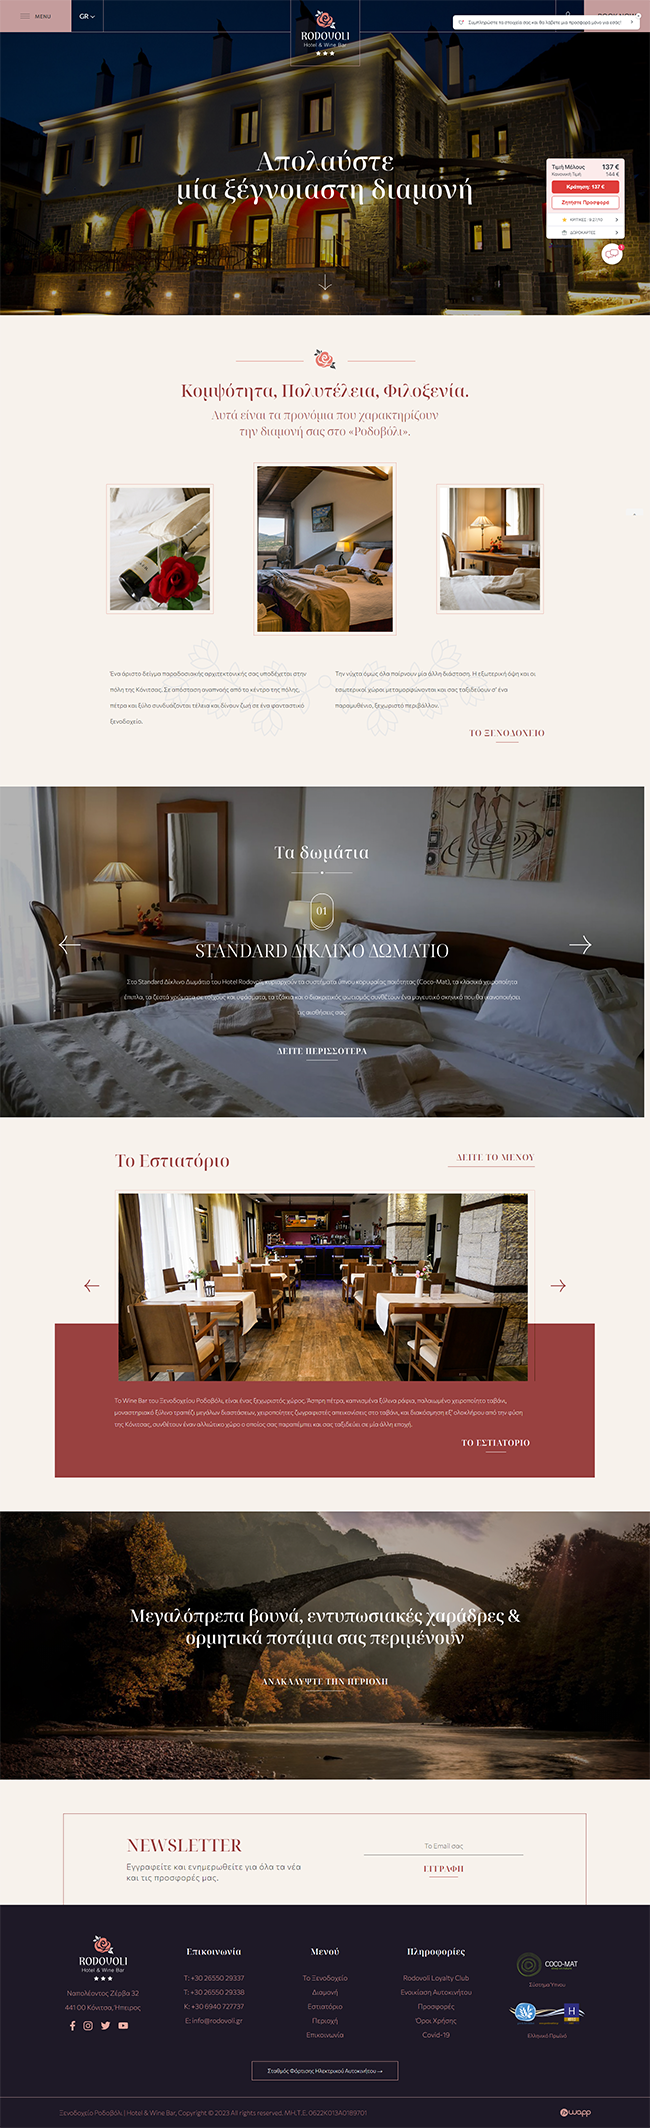 Κατασκευή ιστοσελίδας για τo ξενοδοχείο Ροδοβόλι Hotel &amp; Wine Bar στην Κόνιτσα, Ιωάννινα